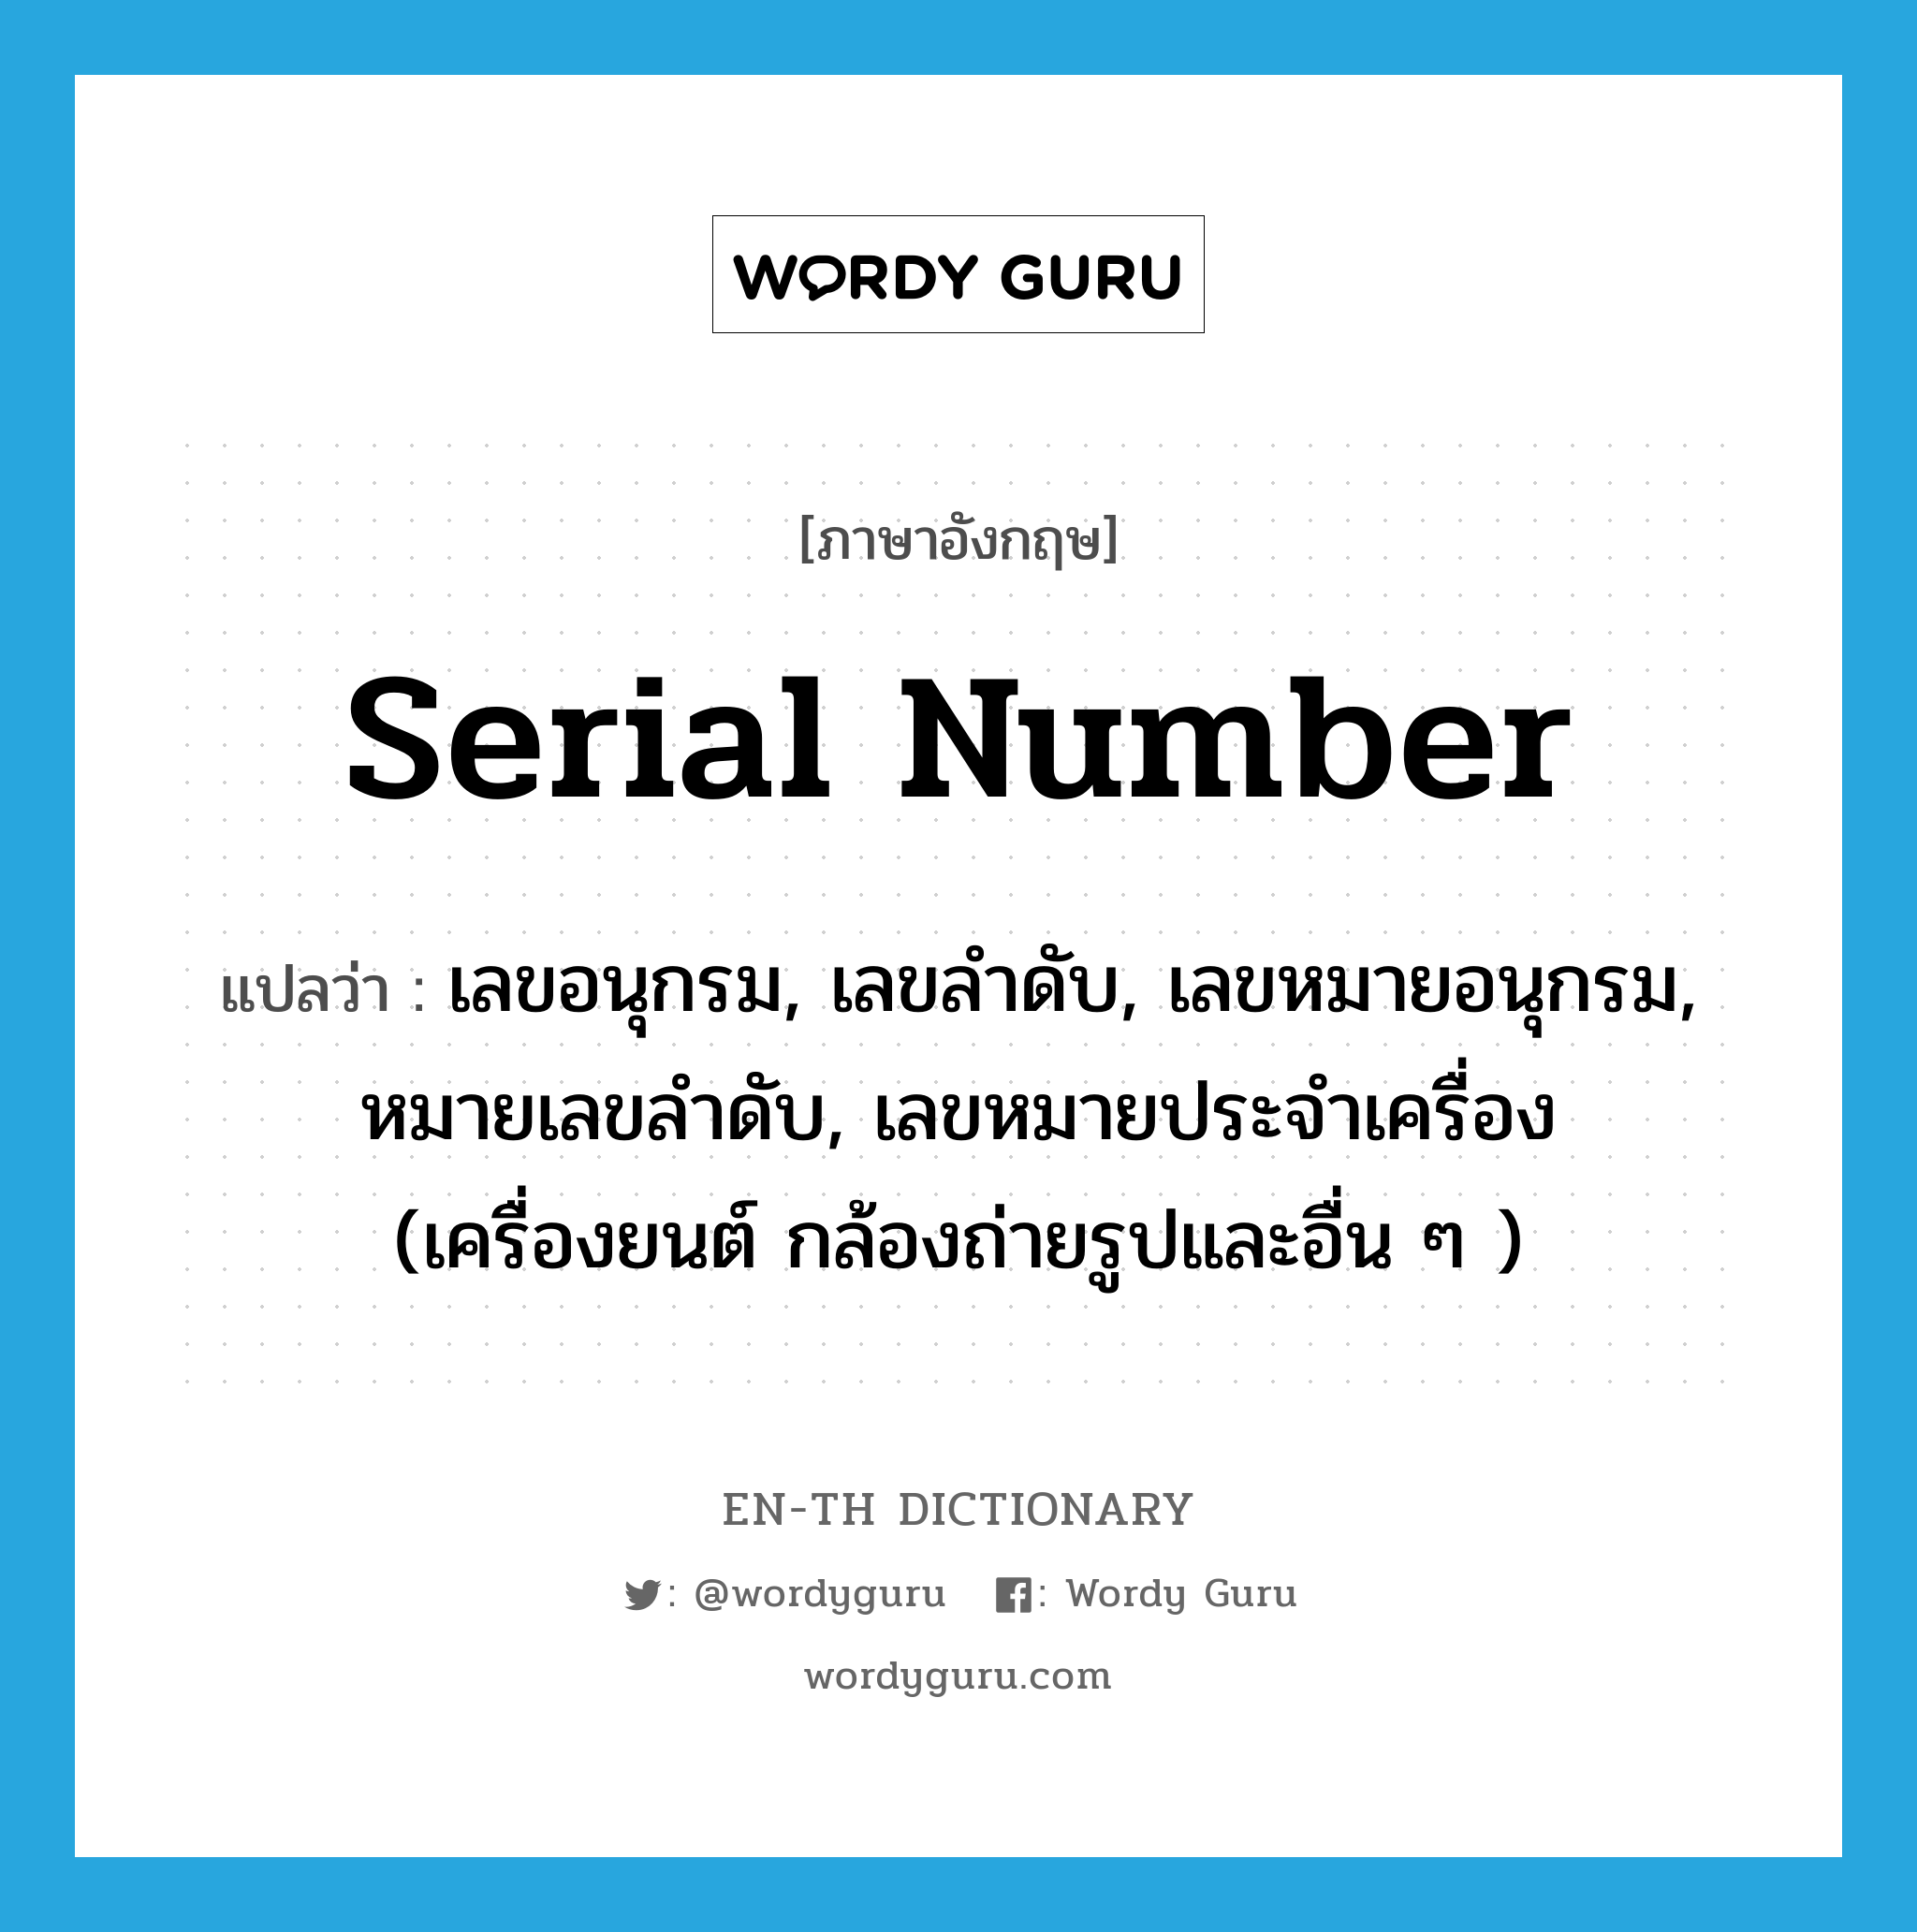 serial number แปลว่า?, คำศัพท์ภาษาอังกฤษ serial number แปลว่า เลขอนุกรม, เลขลำดับ, เลขหมายอนุกรม, หมายเลขลำดับ, เลขหมายประจำเครื่อง (เครื่องยนต์ กล้องถ่ายรูปและอื่น ๆ ) ประเภท N หมวด N